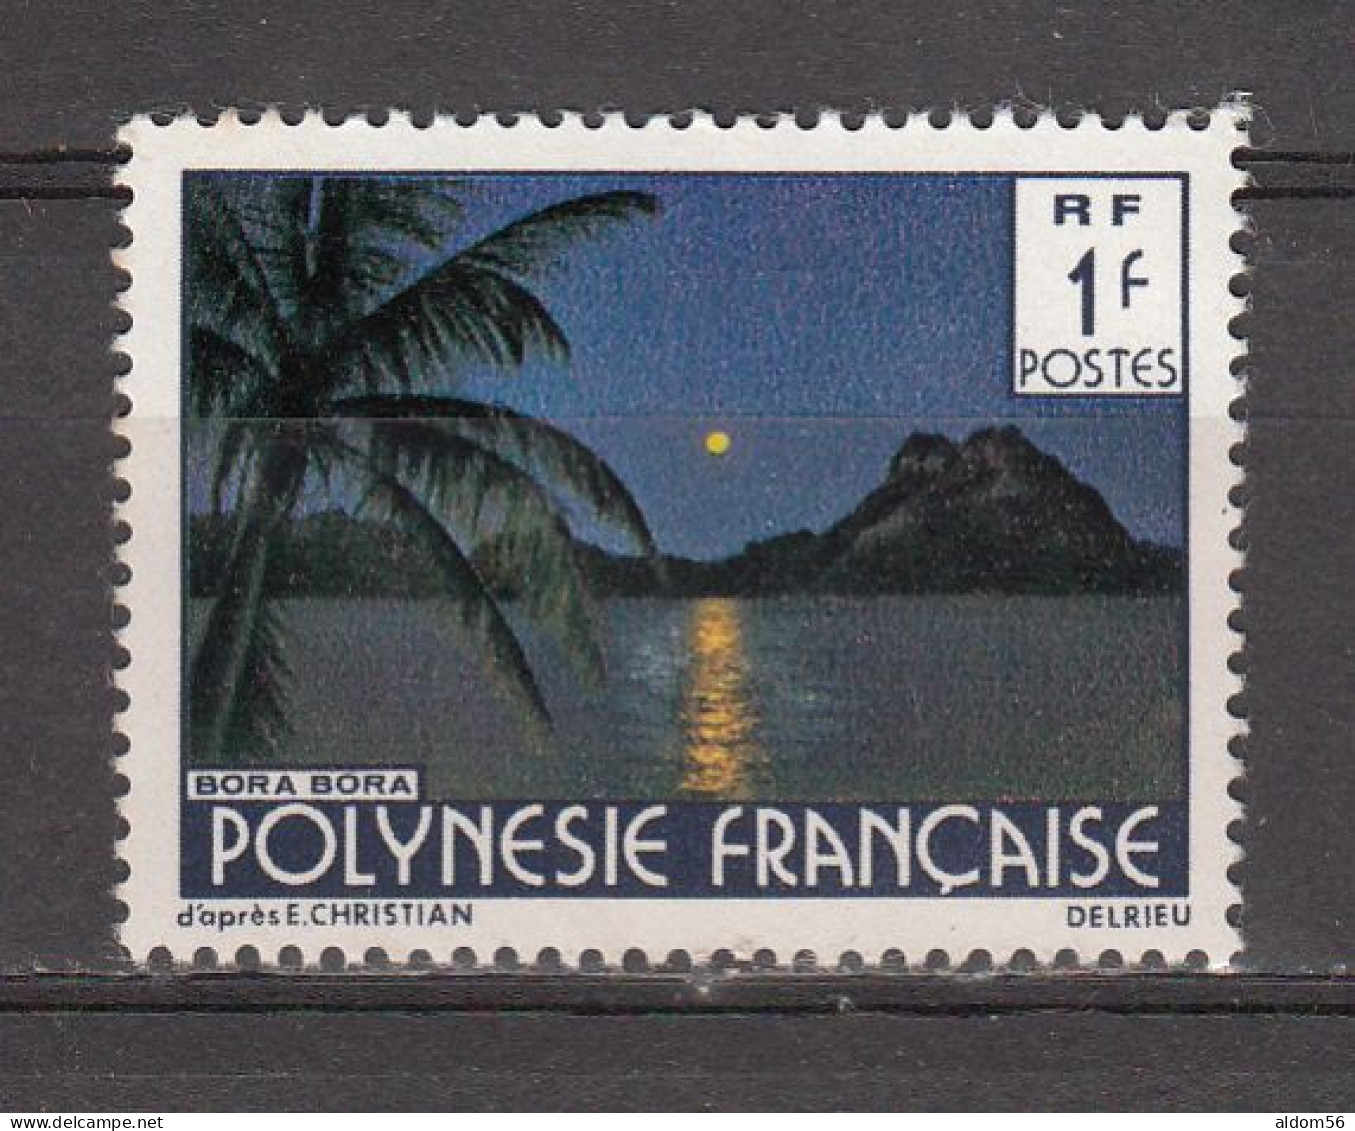 Lot de timbres neufs** Polynésie dans classeur